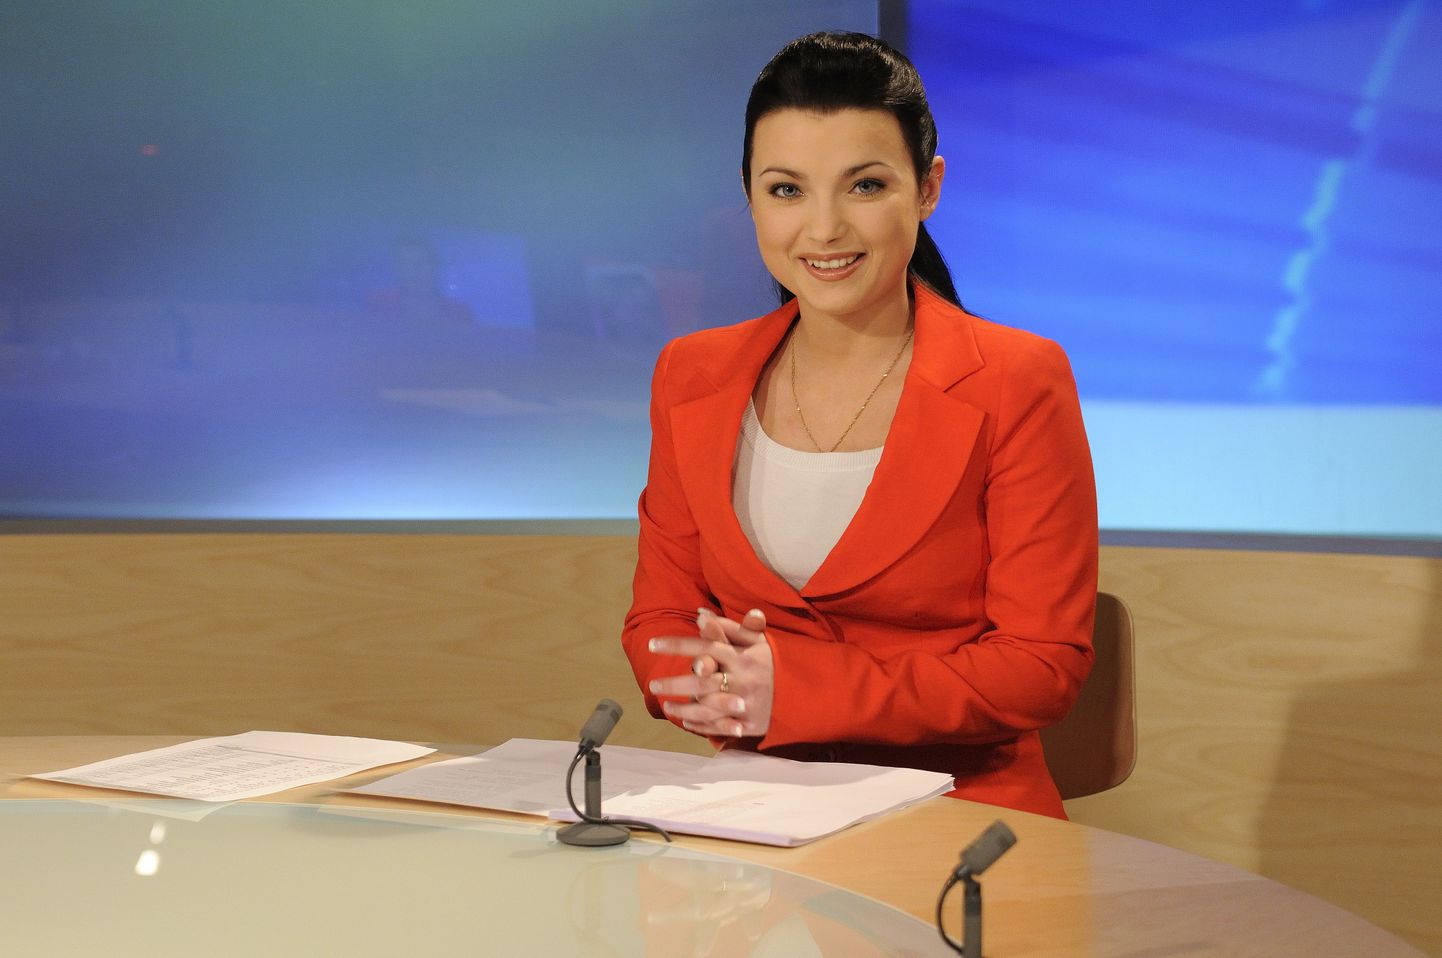 Ульяна Гусев, ведущая "Актуальной камеры" на русском языке и AK+. "Актуальную камеру" планируется сделать базовой новостной передачей ЭТВ 3.